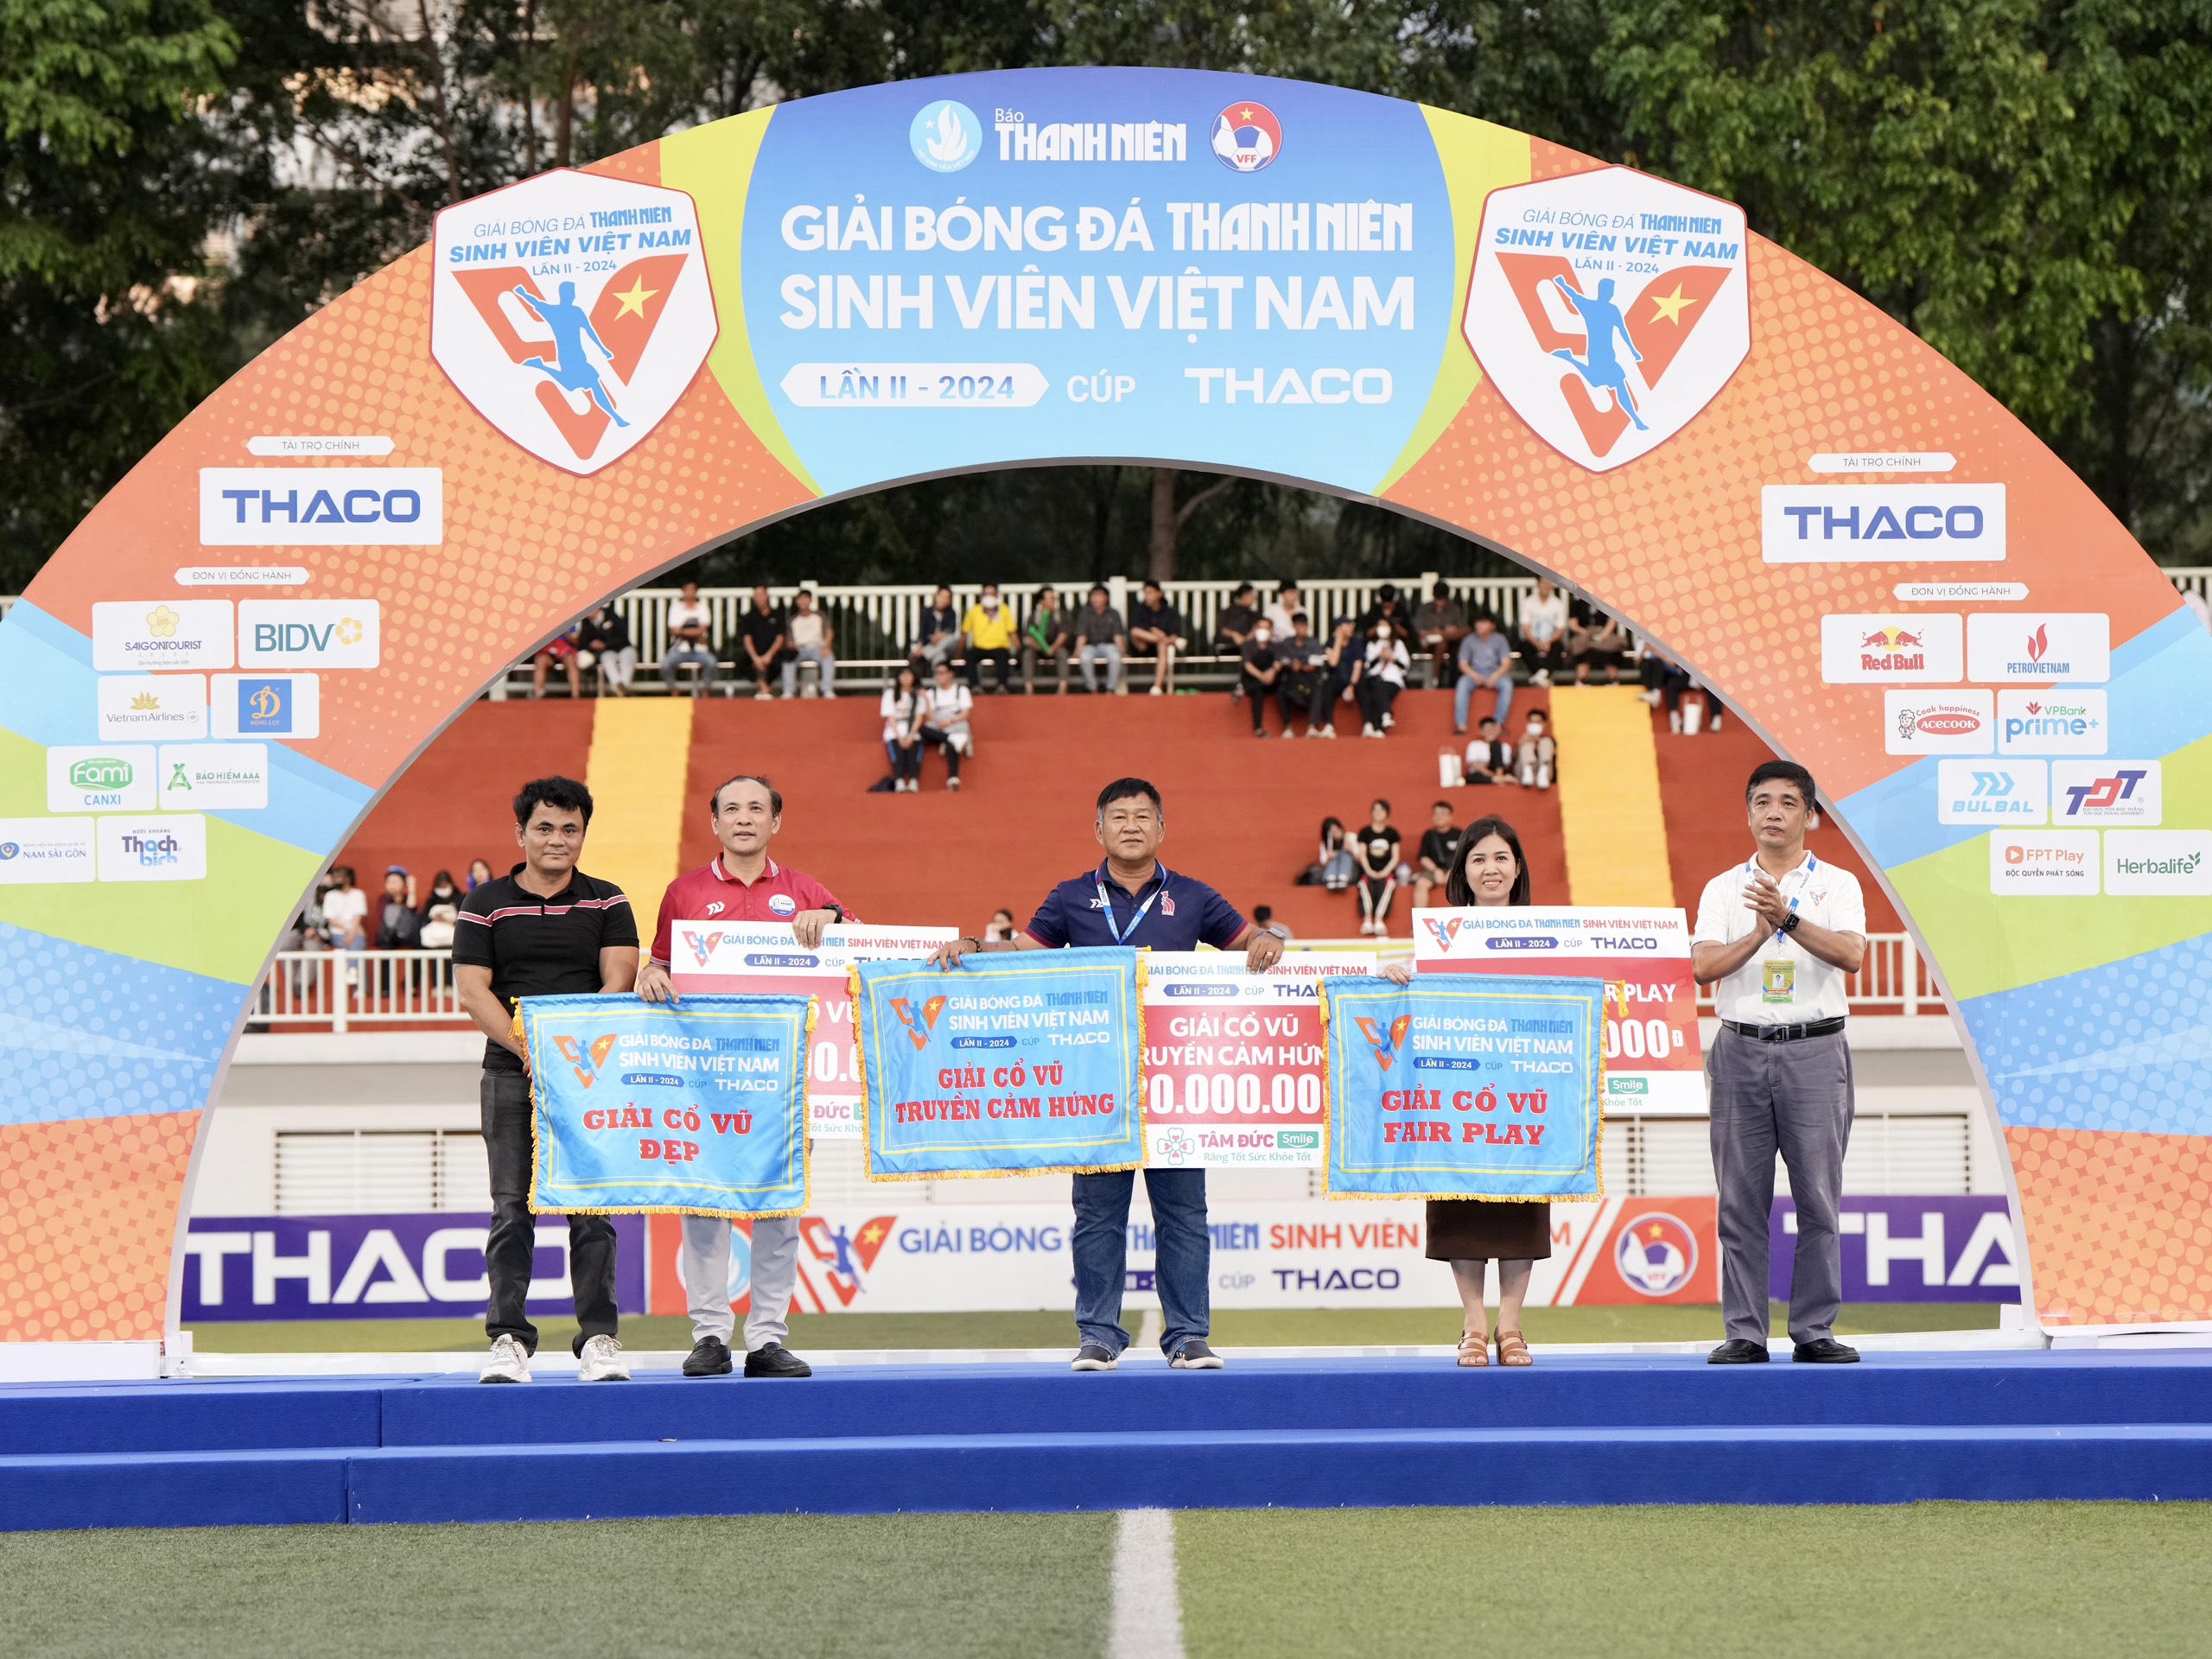 Nhìn lại hành trình giải bóng đá Thanh Niên sinh viên Việt Nam mùa 2: Những dấu ấn đẹp- Ảnh 13.